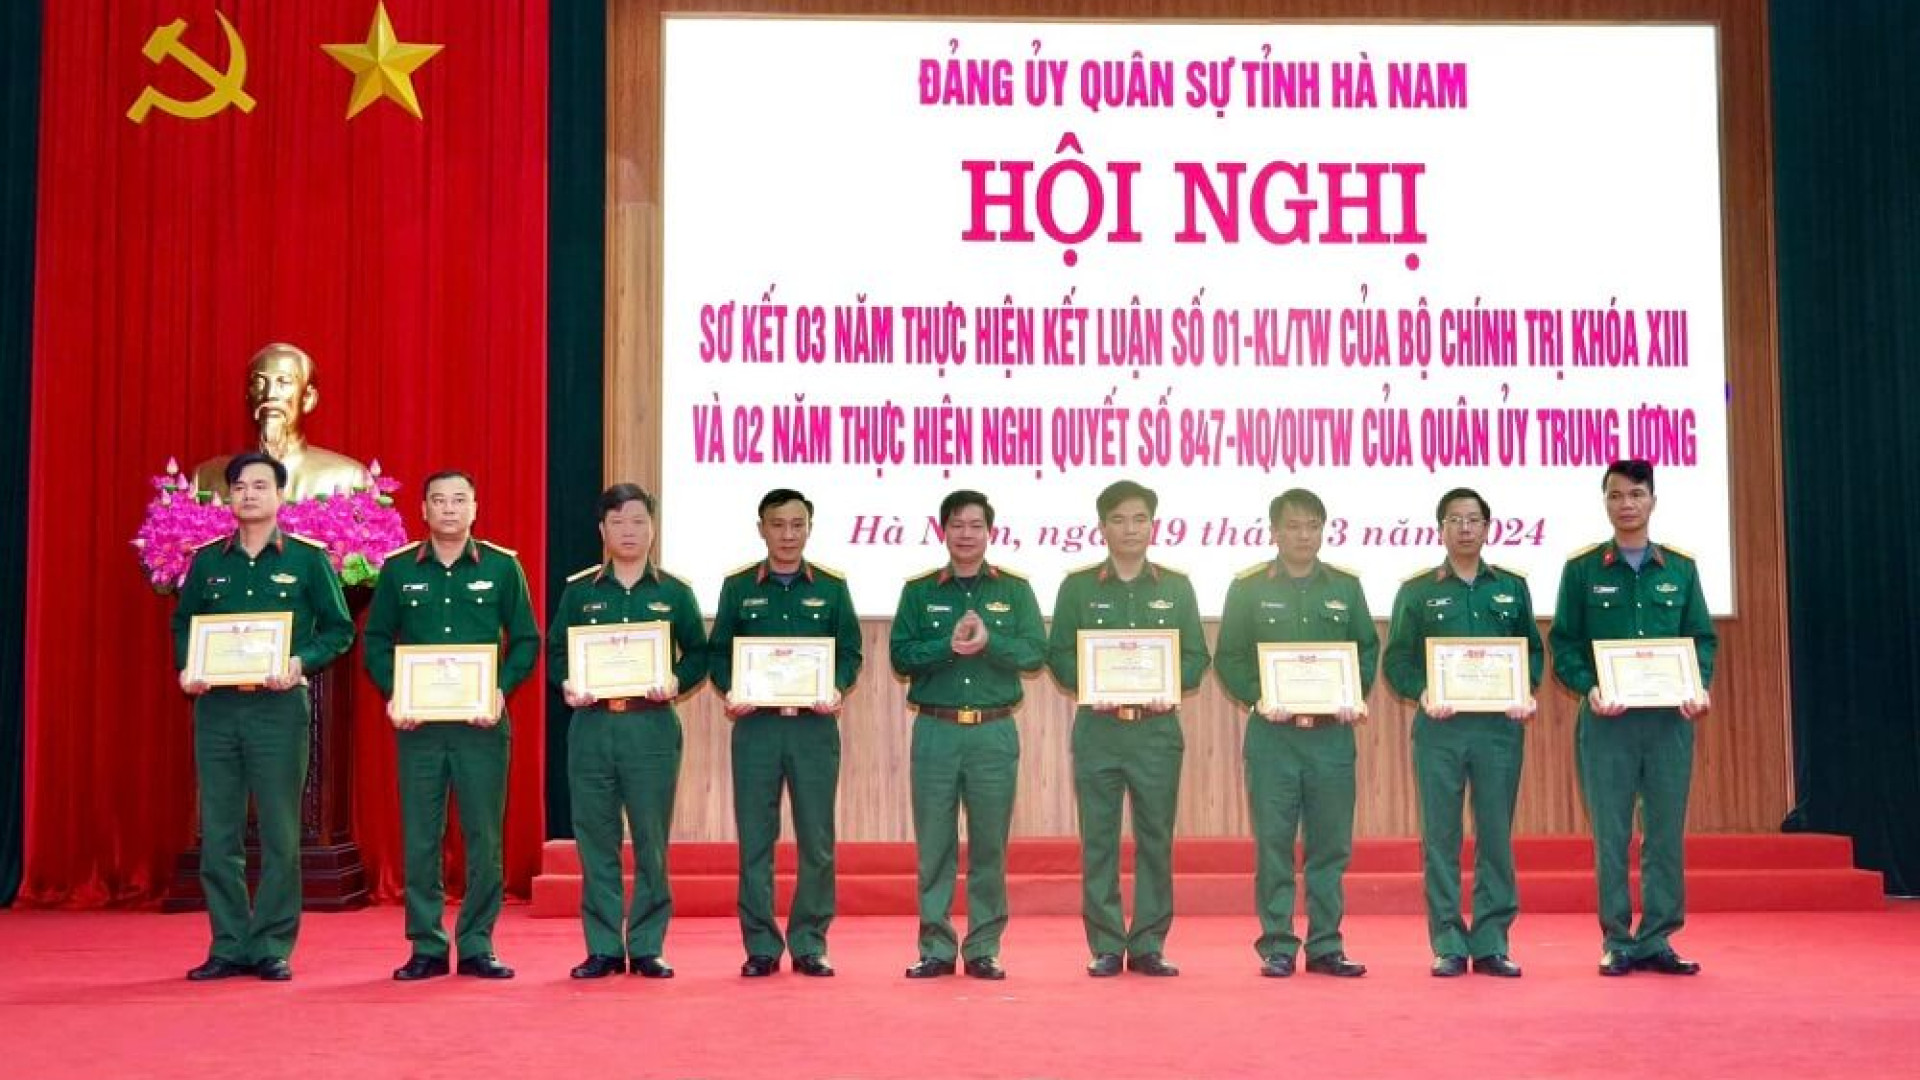 Đảng ủy Quân sự tỉnh Hà Nam sơ kết 3 năm thực hiện thực hiện Kết luận số 01 của Bộ Chính trị, 2 năm thực hiện Nghị quyết số 847 của Quân ủy Trung ương